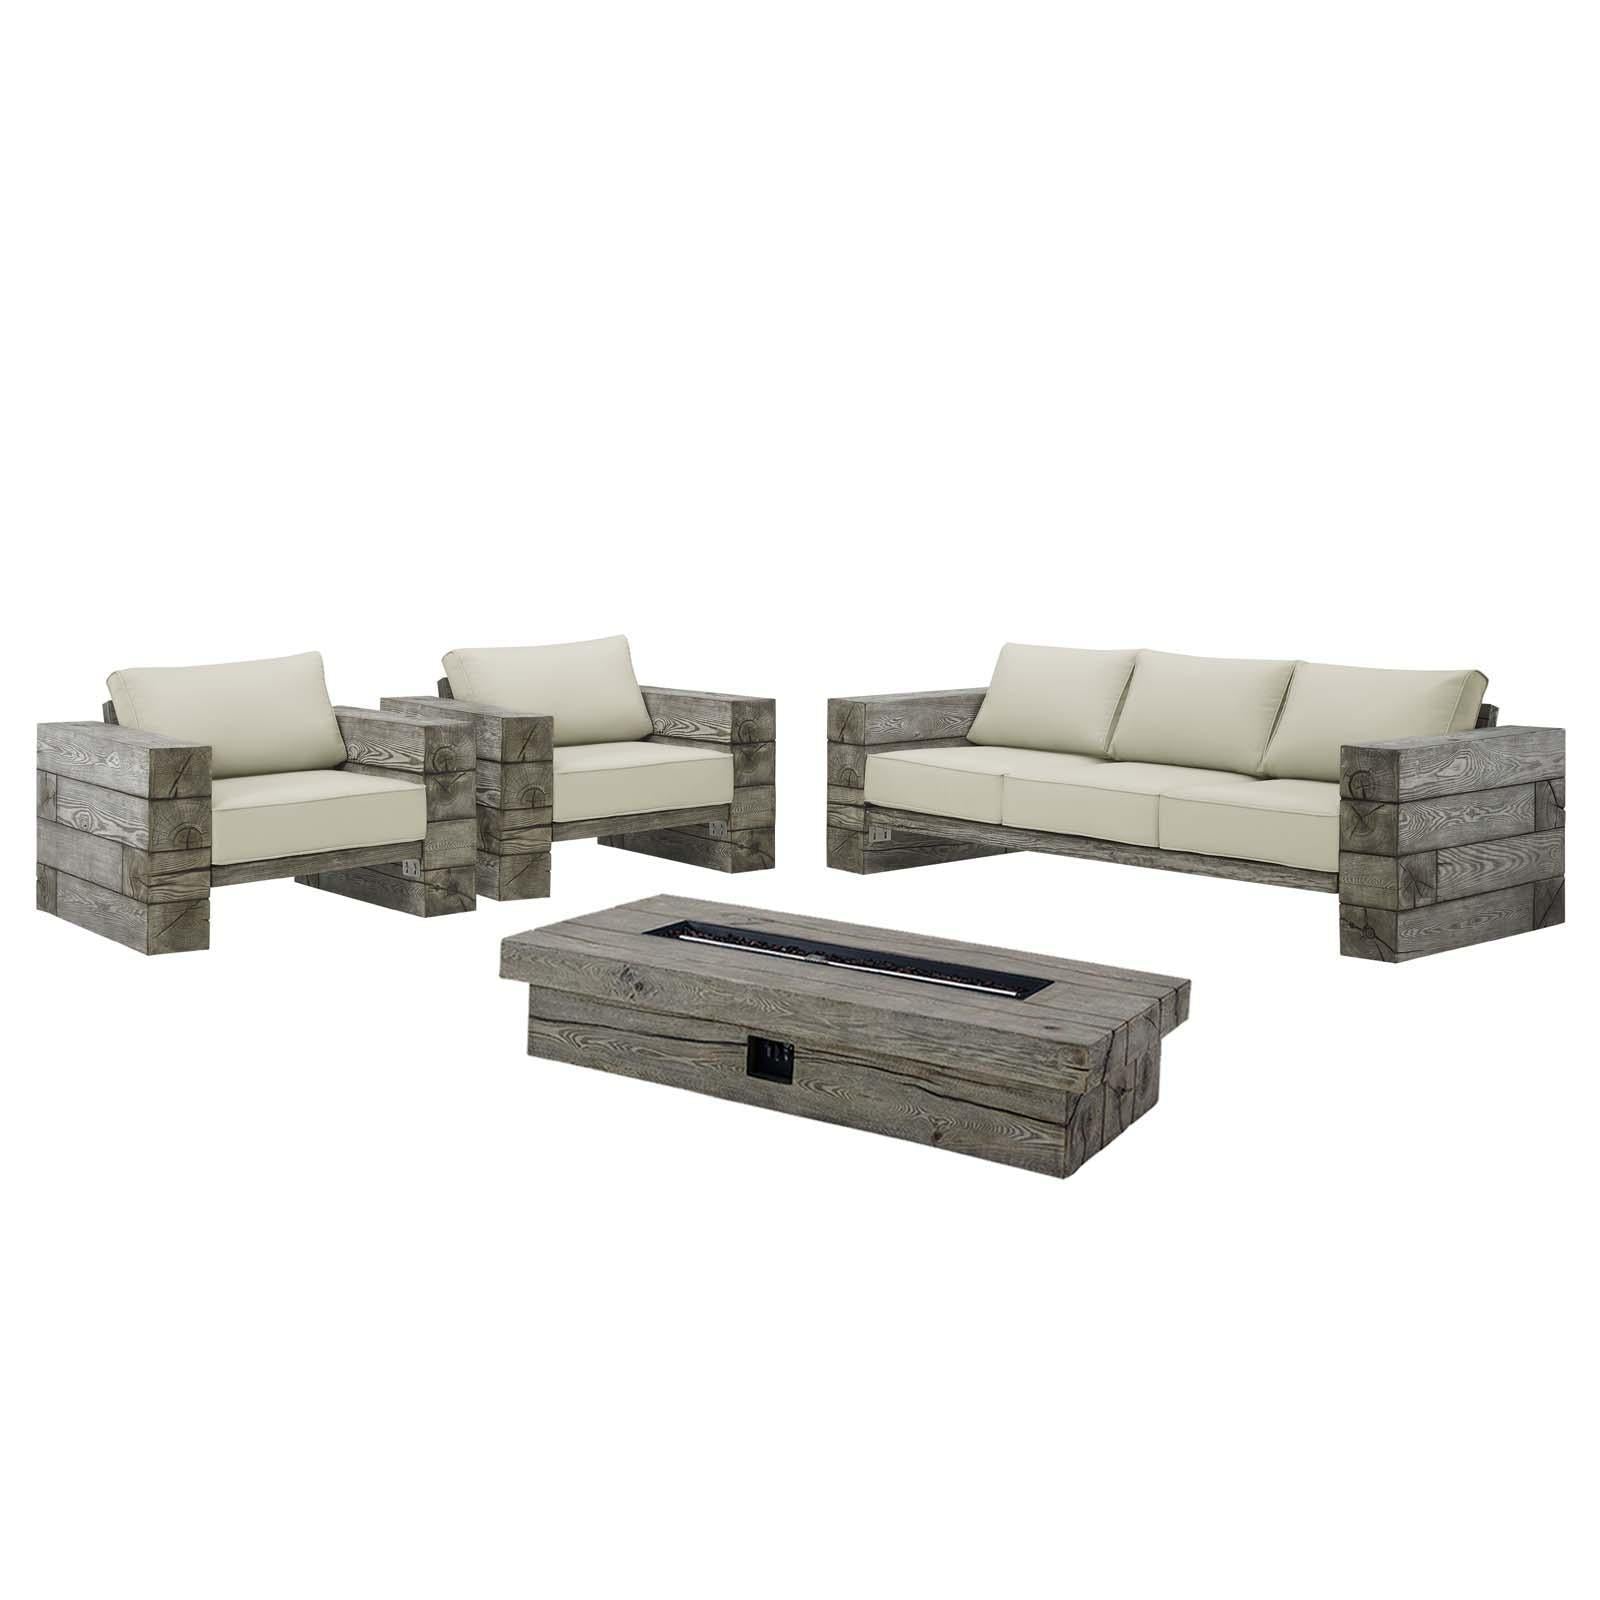 Modway Furniture Modern Manteo Rustic Coastal Outdoor Patio Sunbrella® 4 Piece Set - EEI-4036